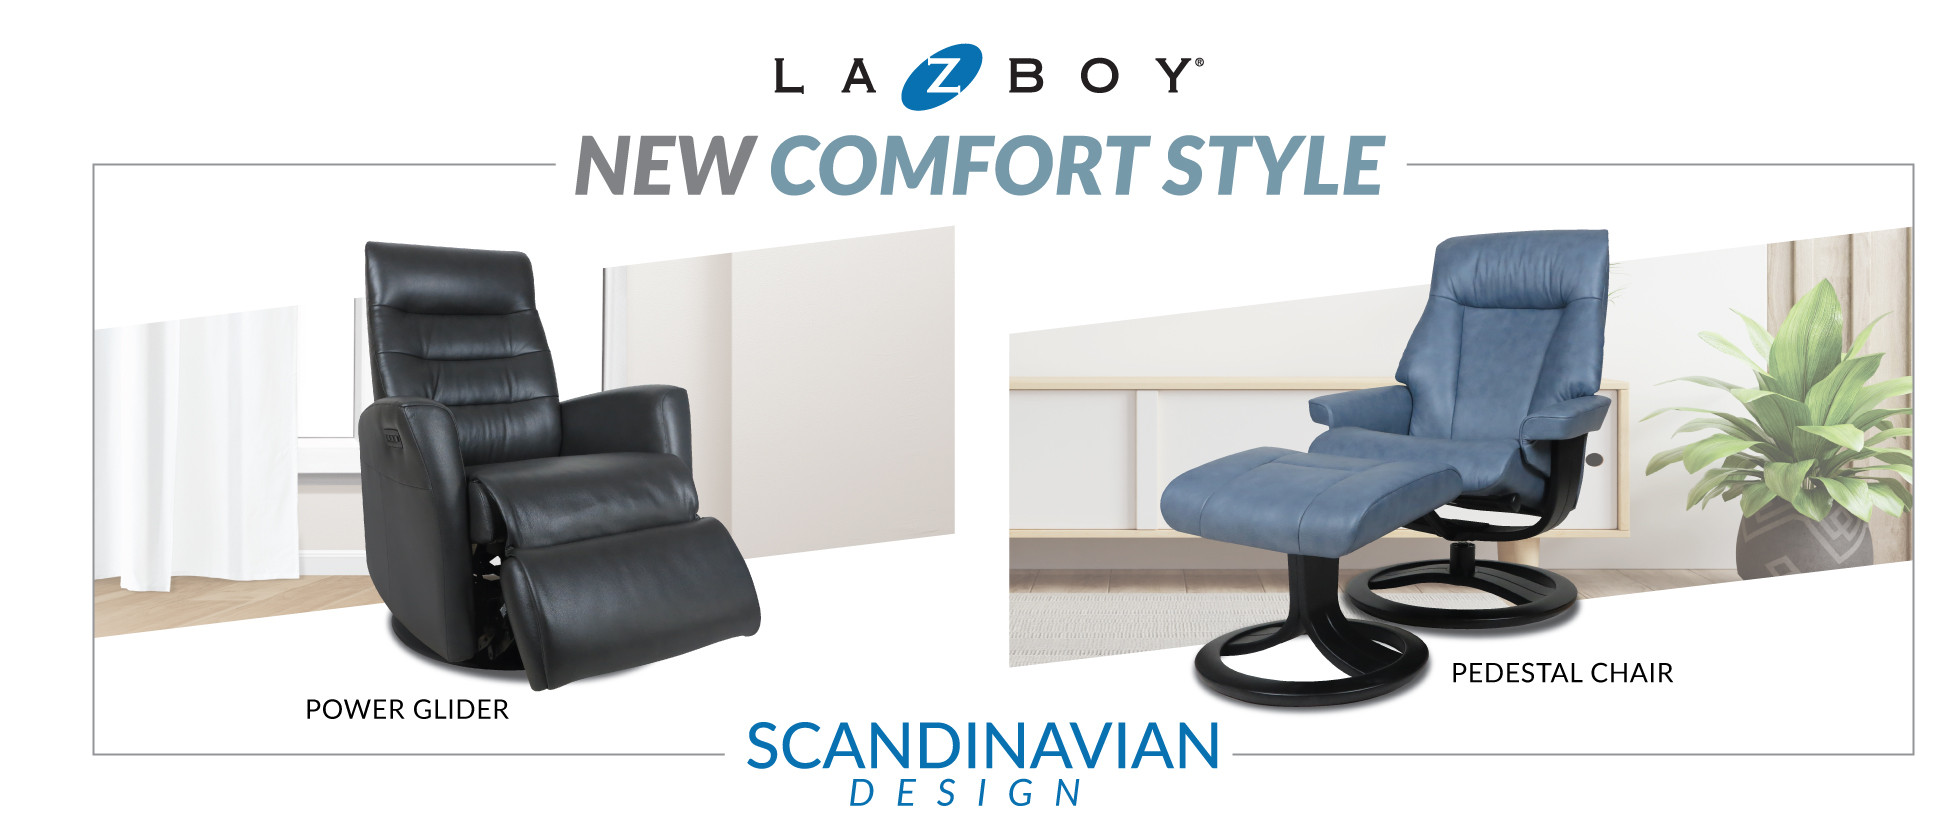 New Comfort Style : Scandinavian Design